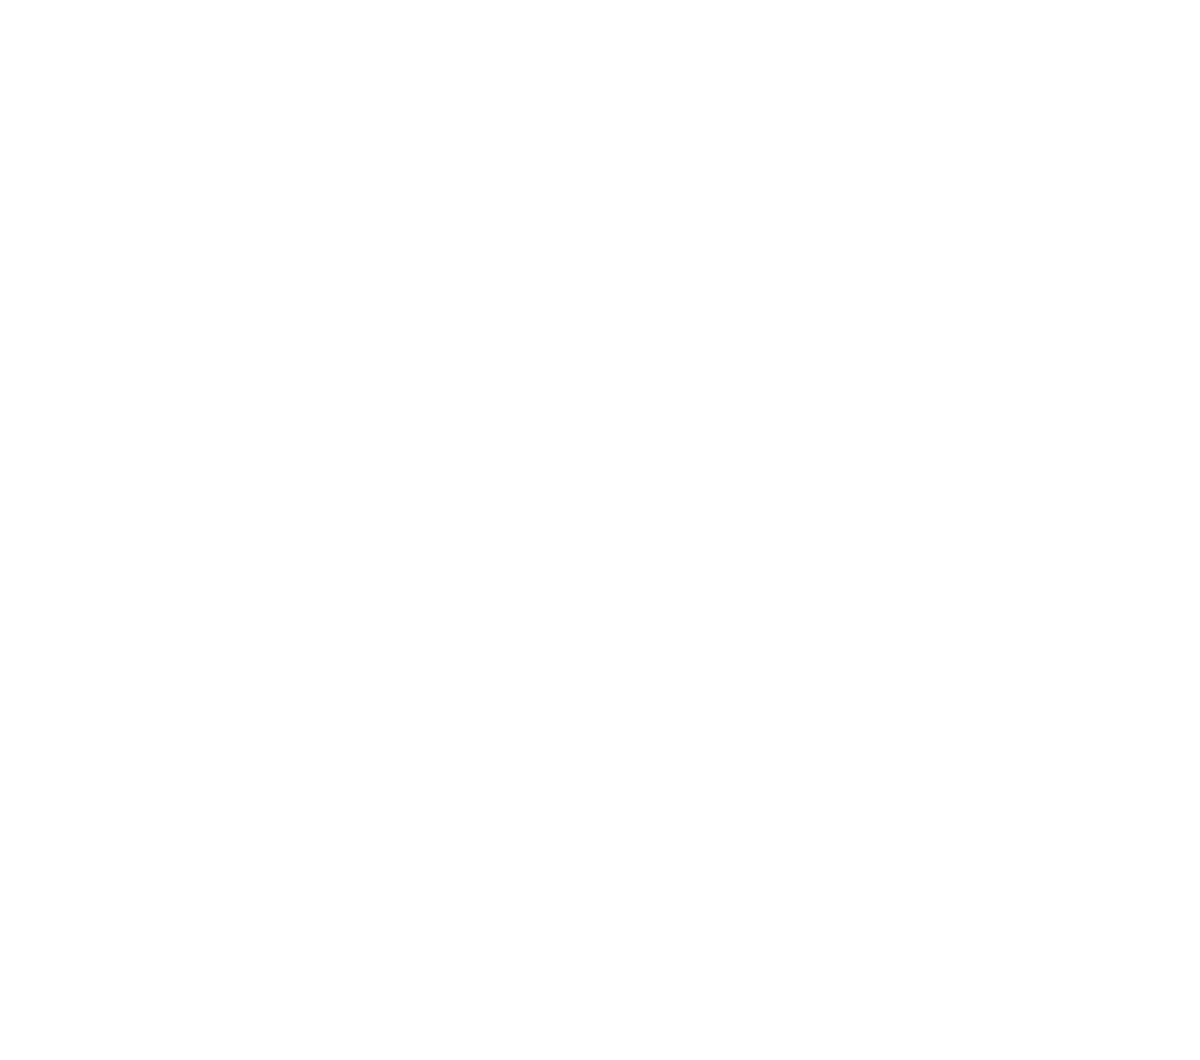 Déifferdenger Big Band